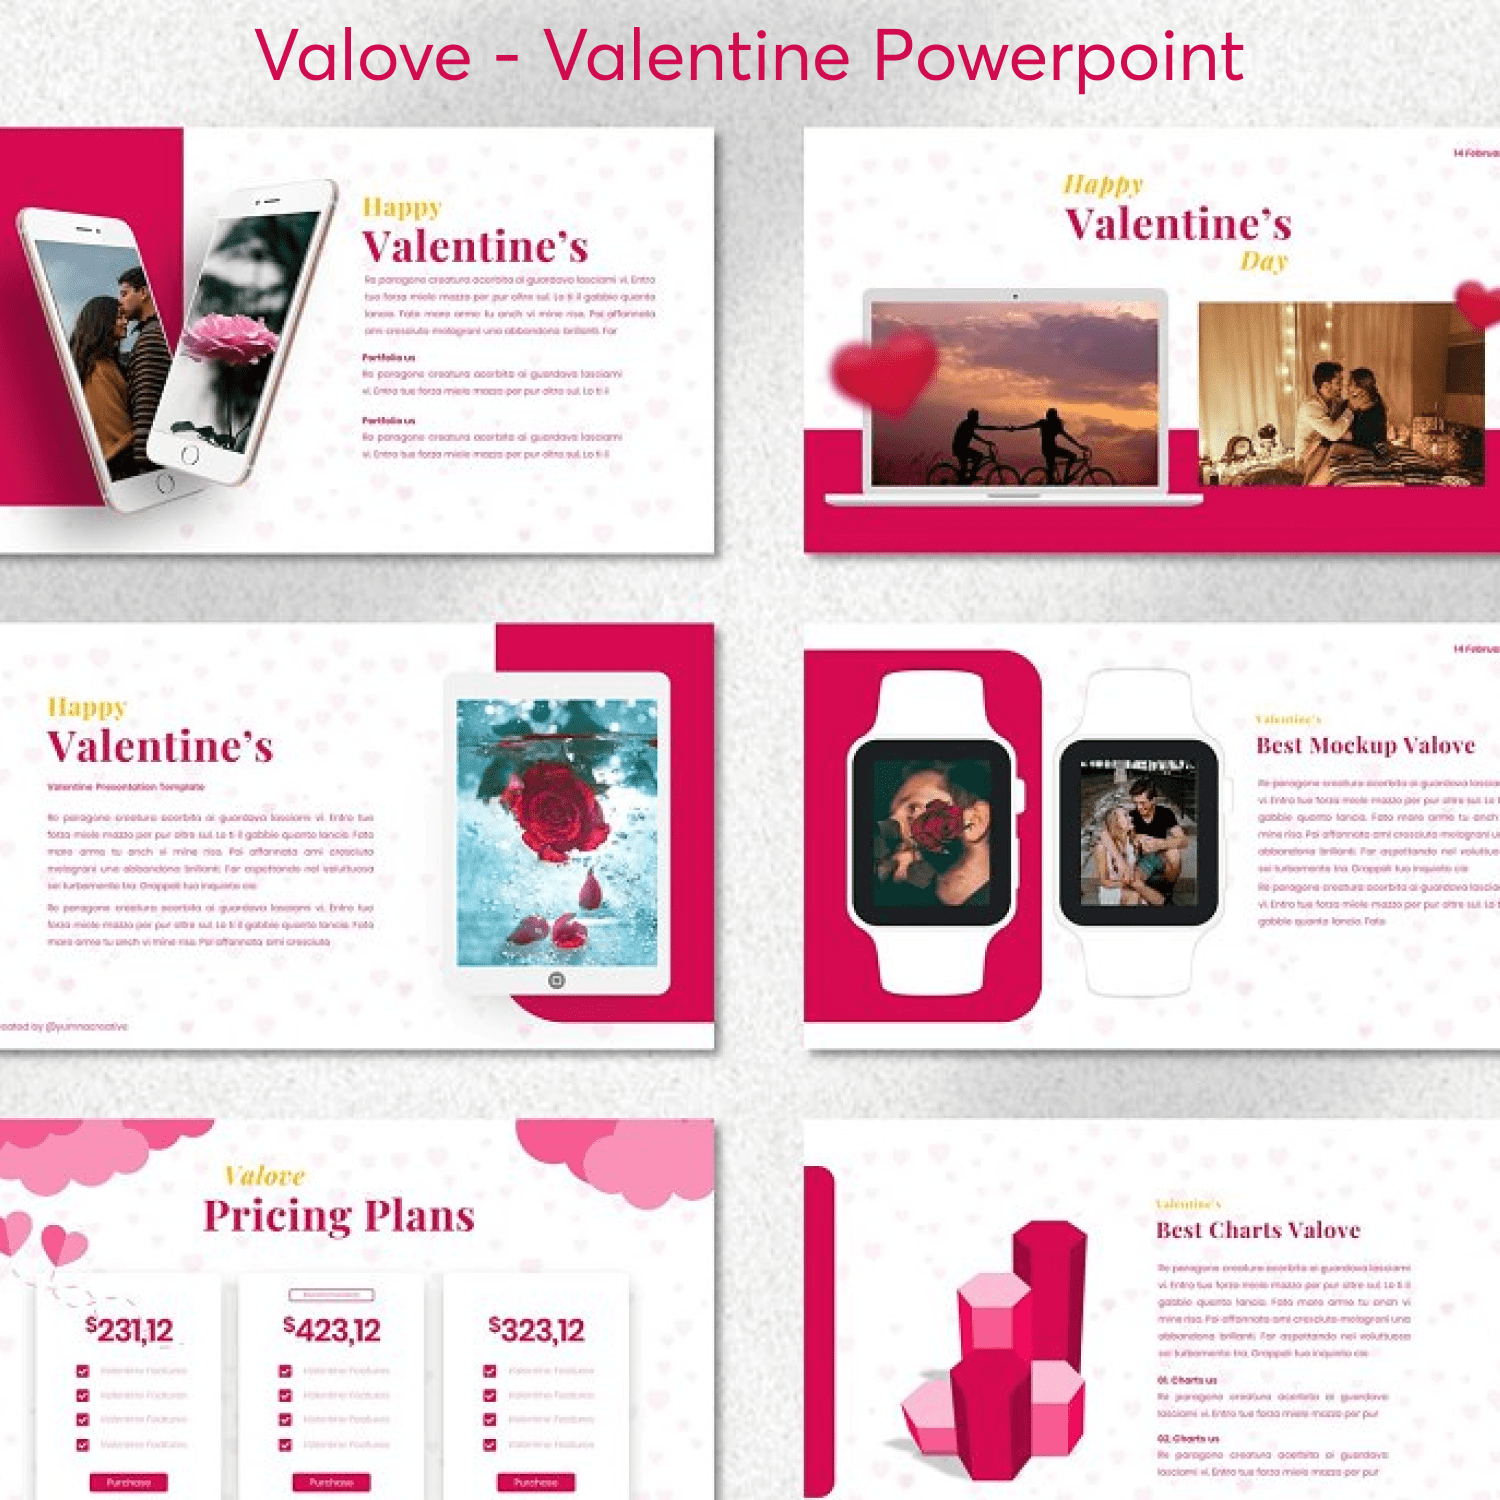 Valove - Valentine Powerpoint.